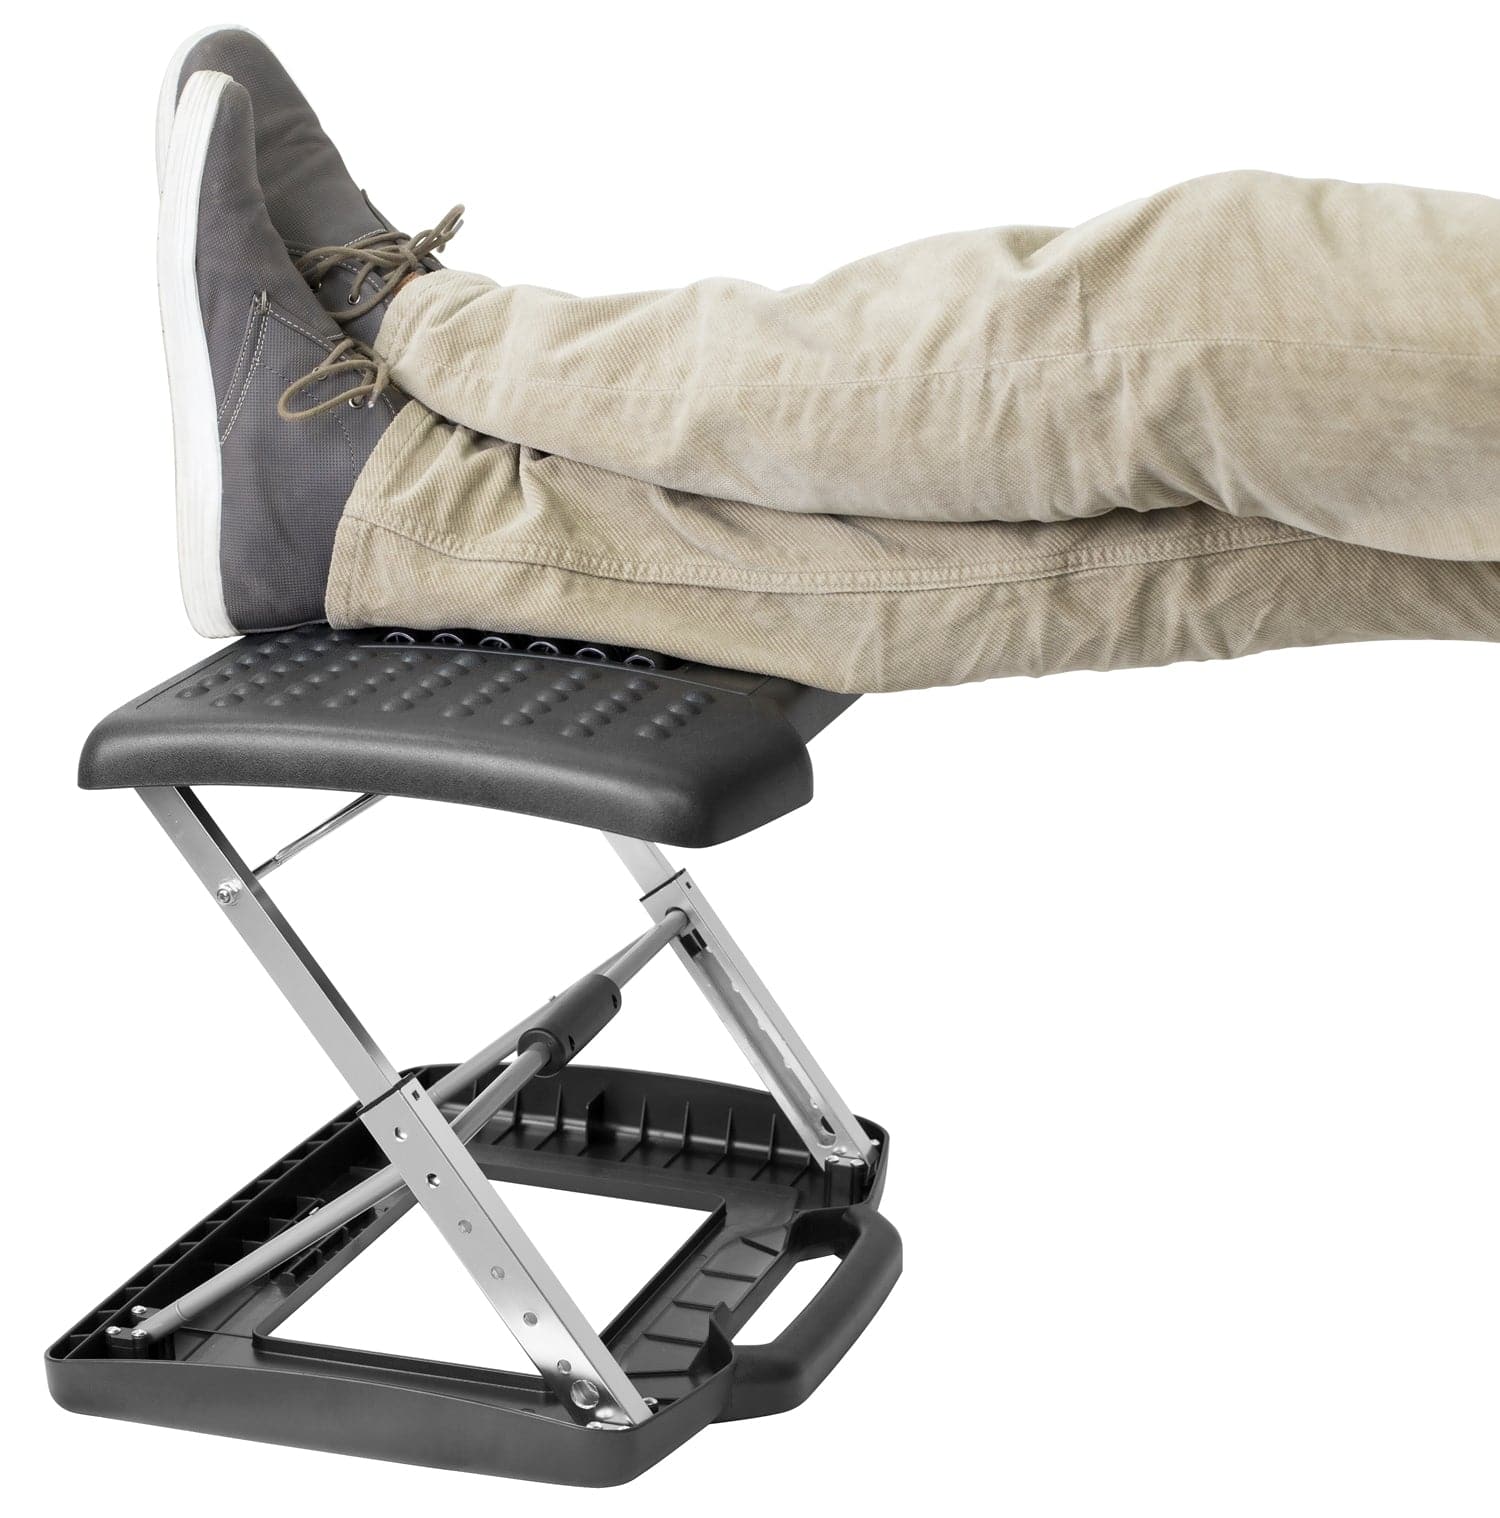 OUKANING Footrest Under Desk Height Adjustable Footrest Home